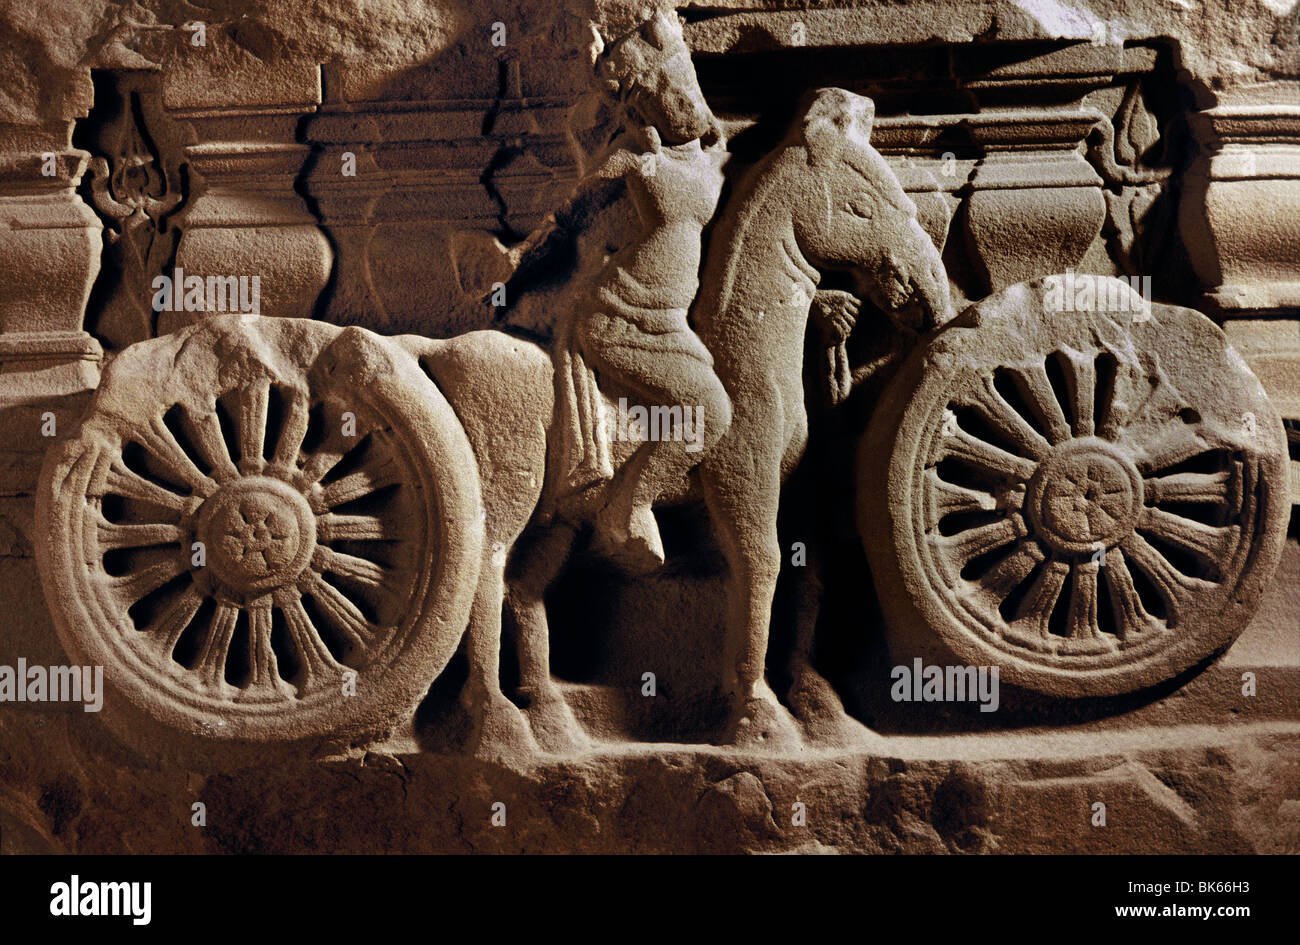 Reiter und Streitwagen, Sockel Fragment, Sandstein, von Khuong meine, Museum Da Nang, Vietnam, Indochina, Südostasien, Asien Stockfoto